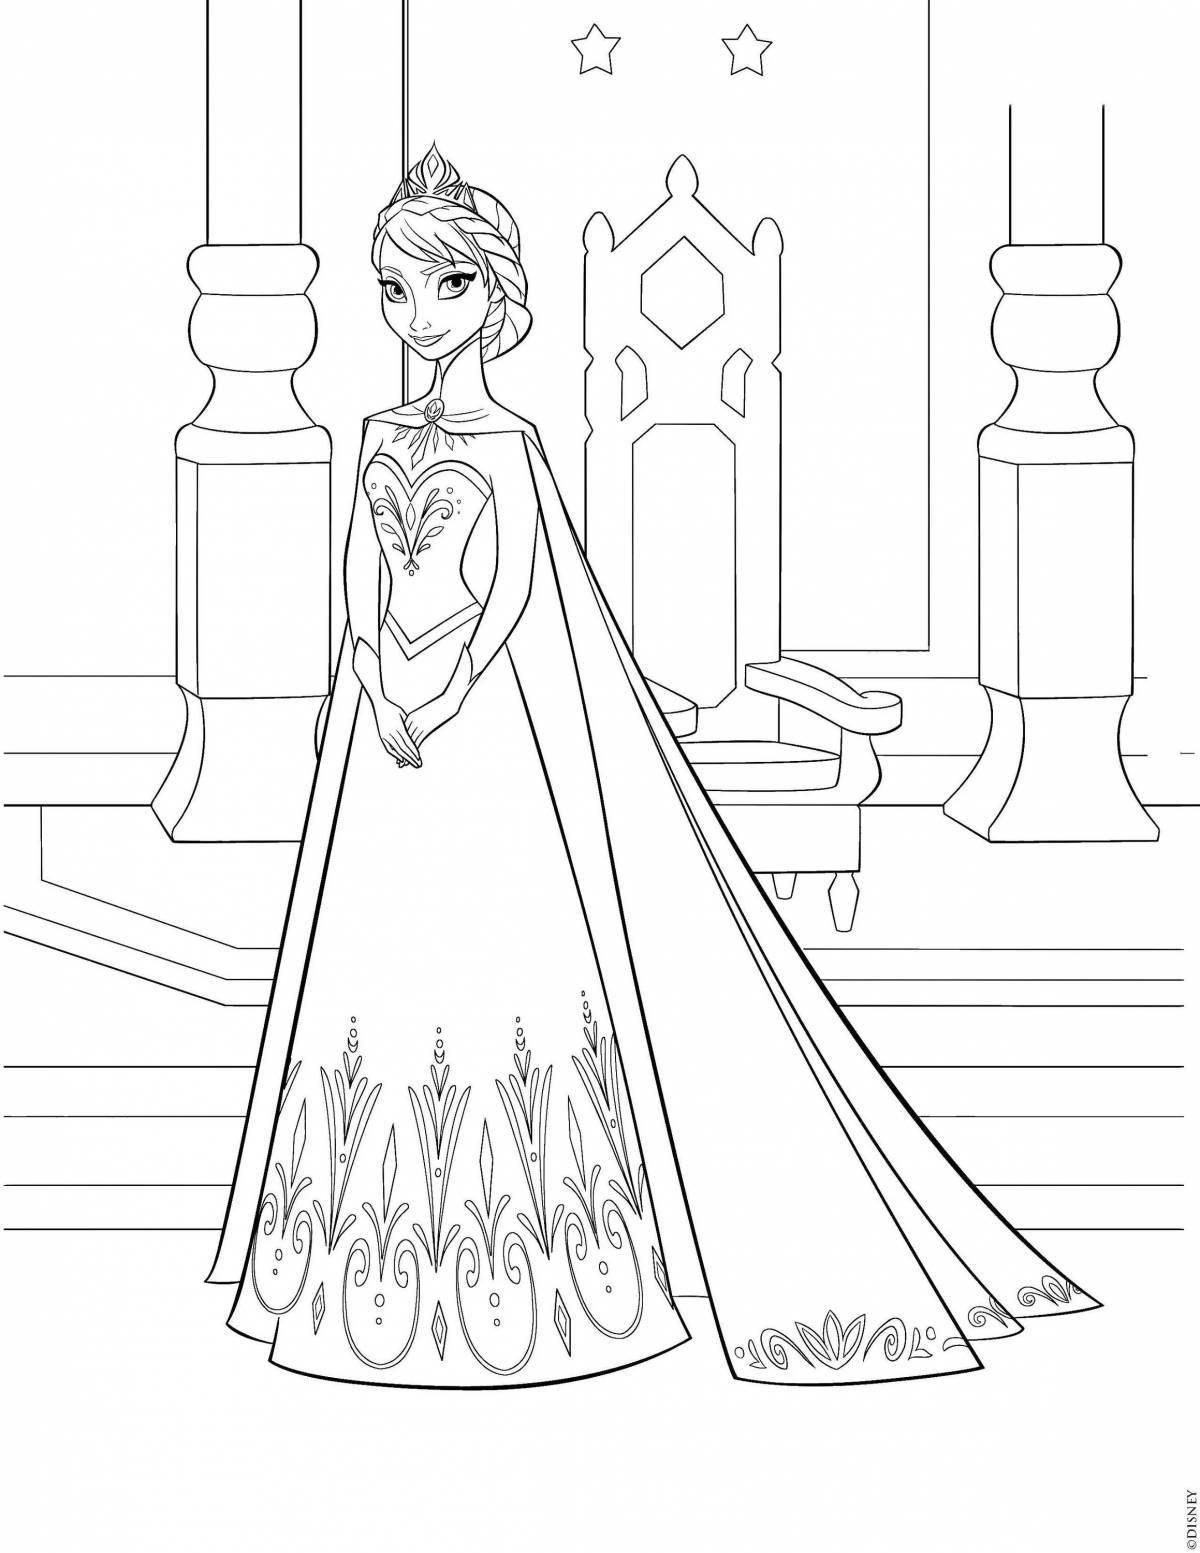 Elsa's elegant castle coloring page